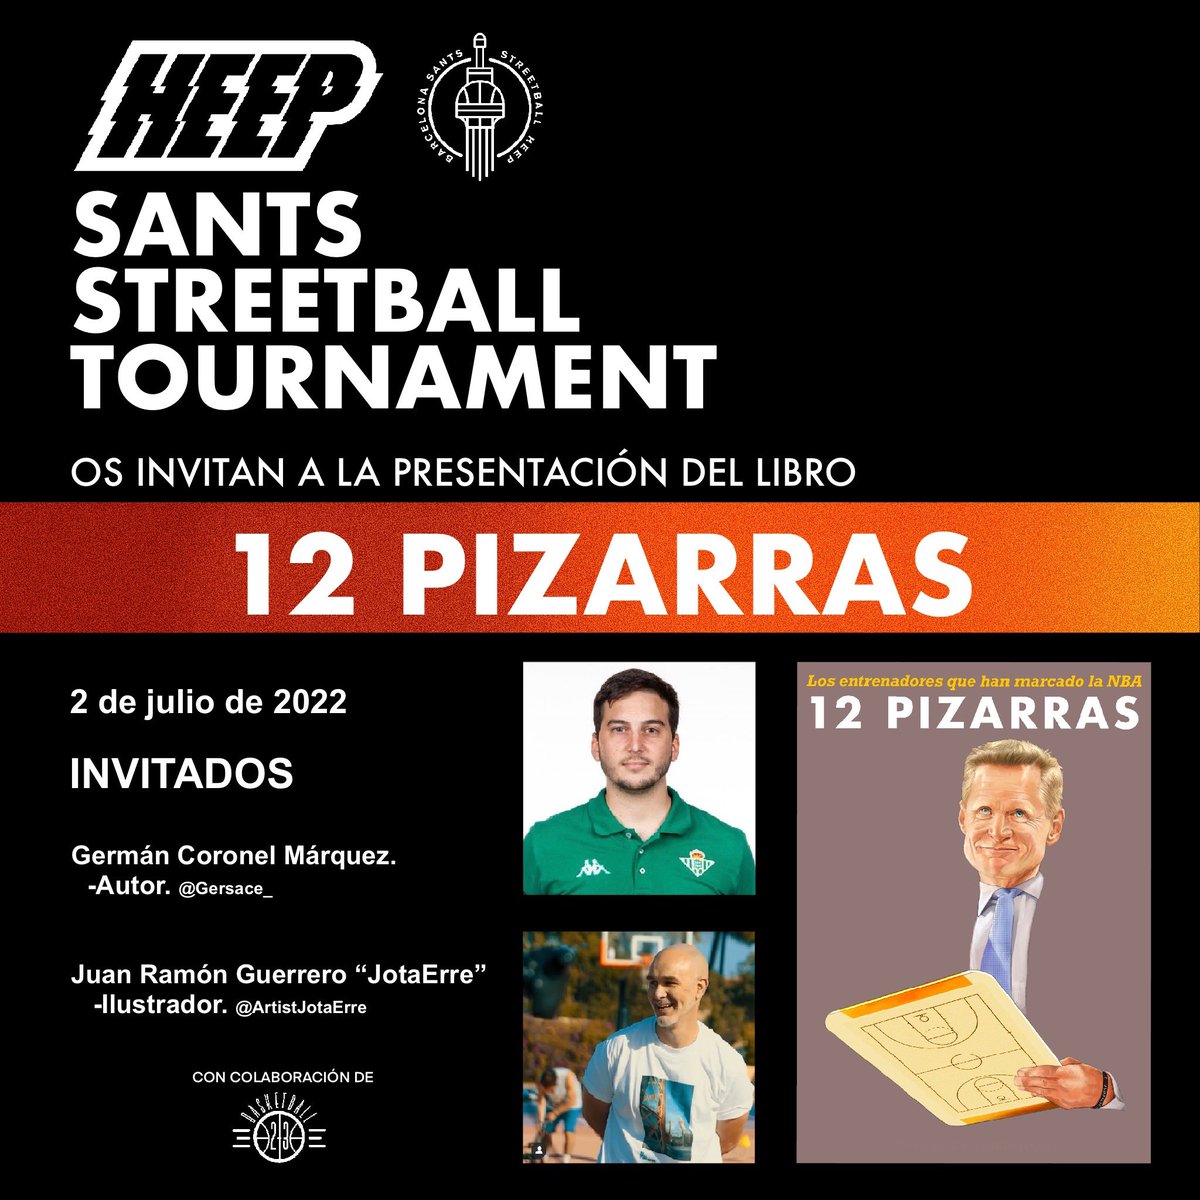 El próximo sábado 2 de julio JotaErre y yo estaremos en Barcelona, en @StreetballBS, presentando “12 Pizarras” durante el HEEP Tournament. Seréis más que bienvenidos. Esperamos ver muchas caras conocidas!